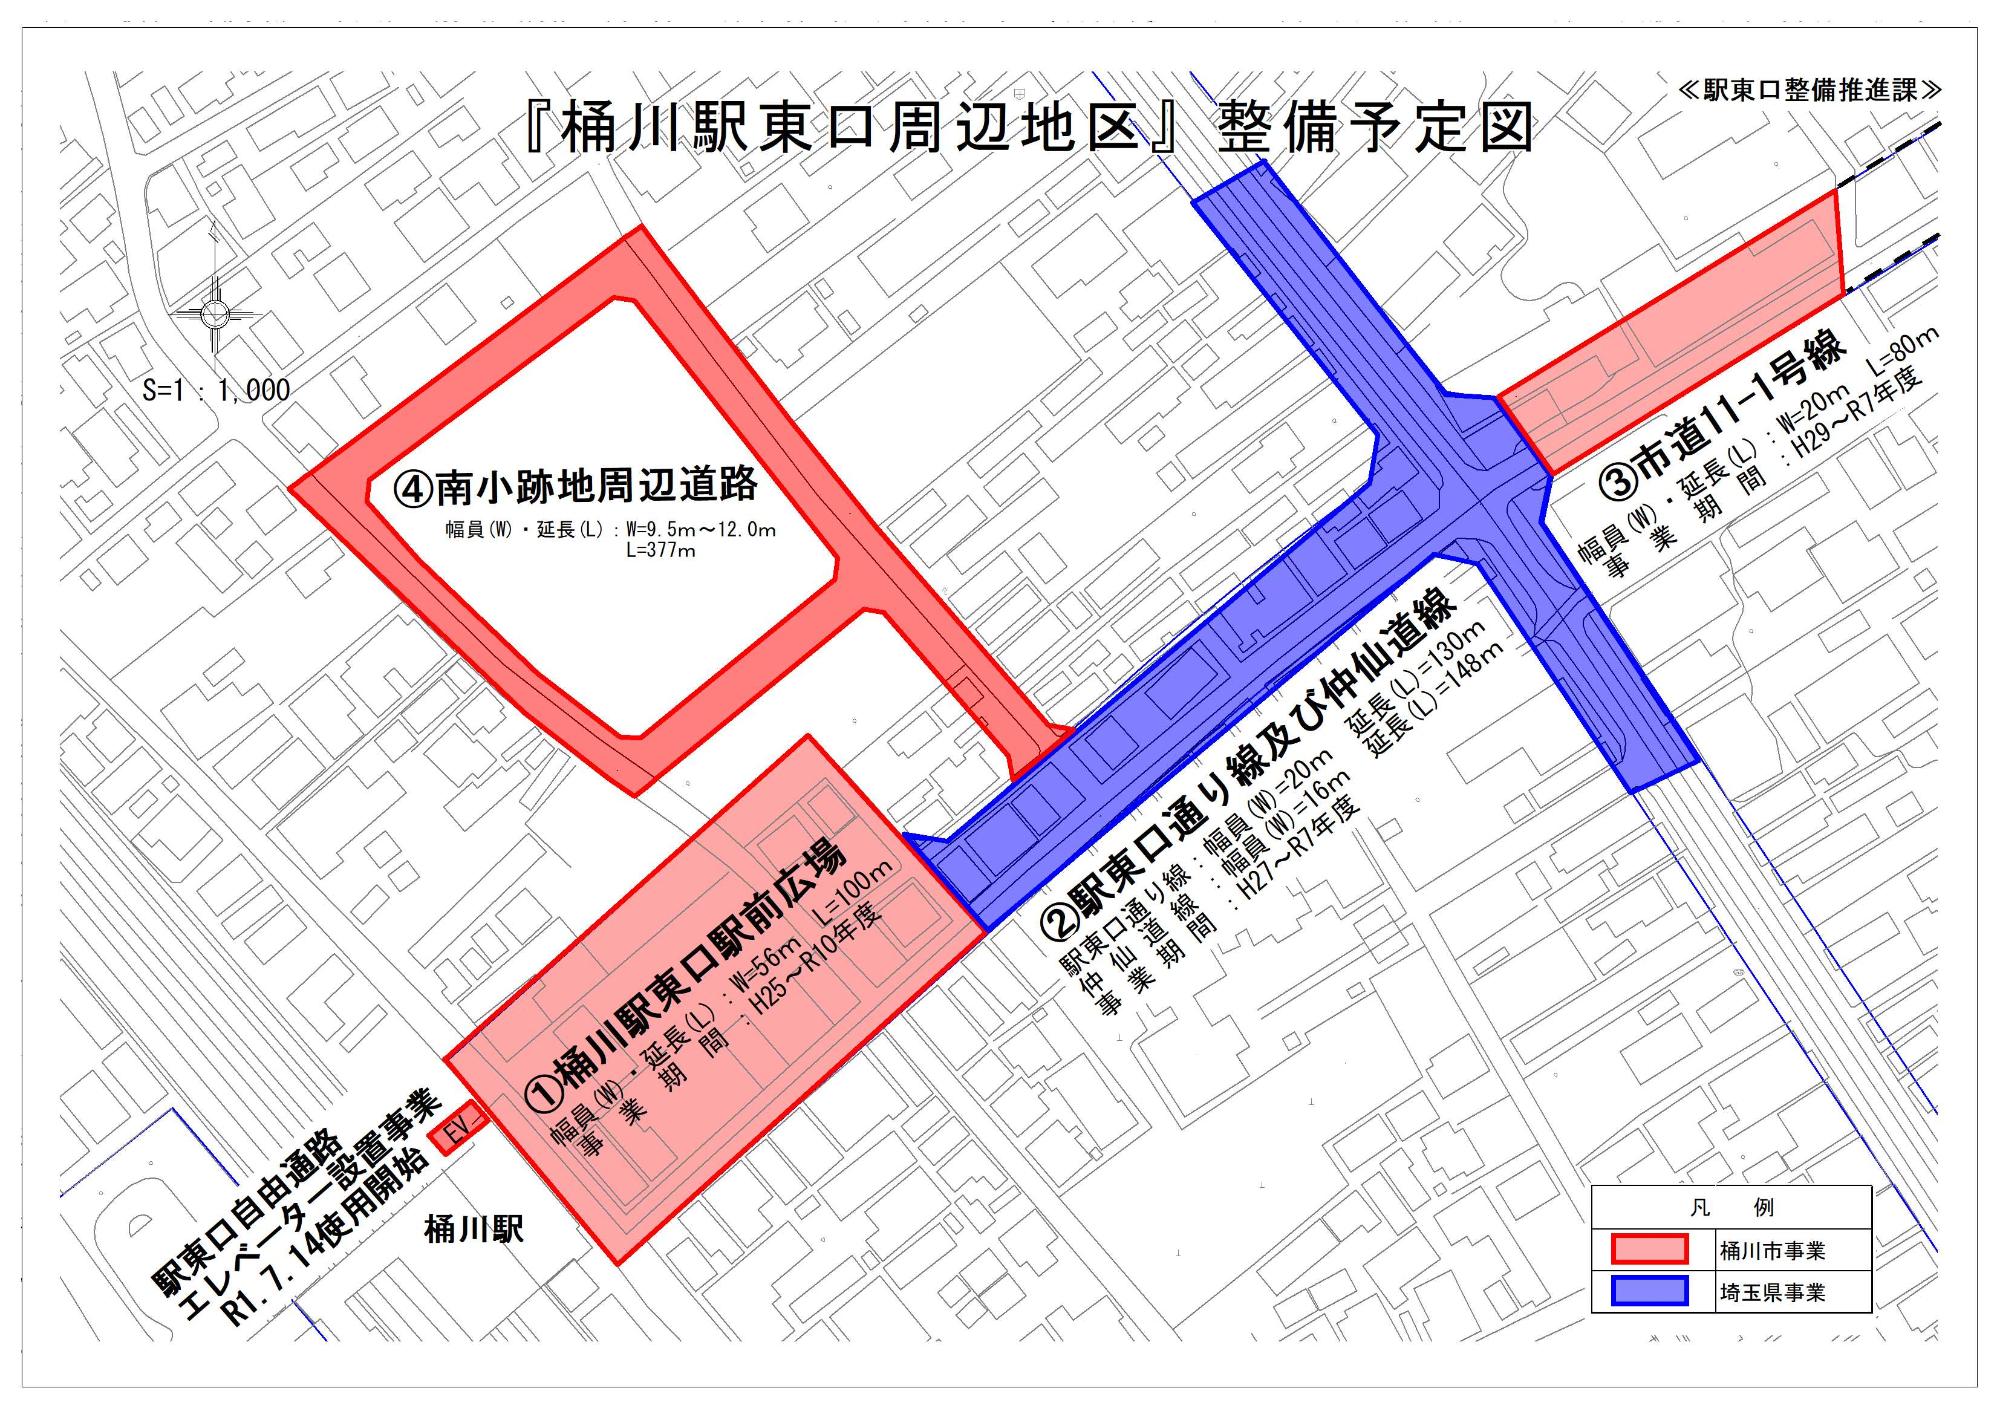 桶川駅東口周辺地区整備予定図